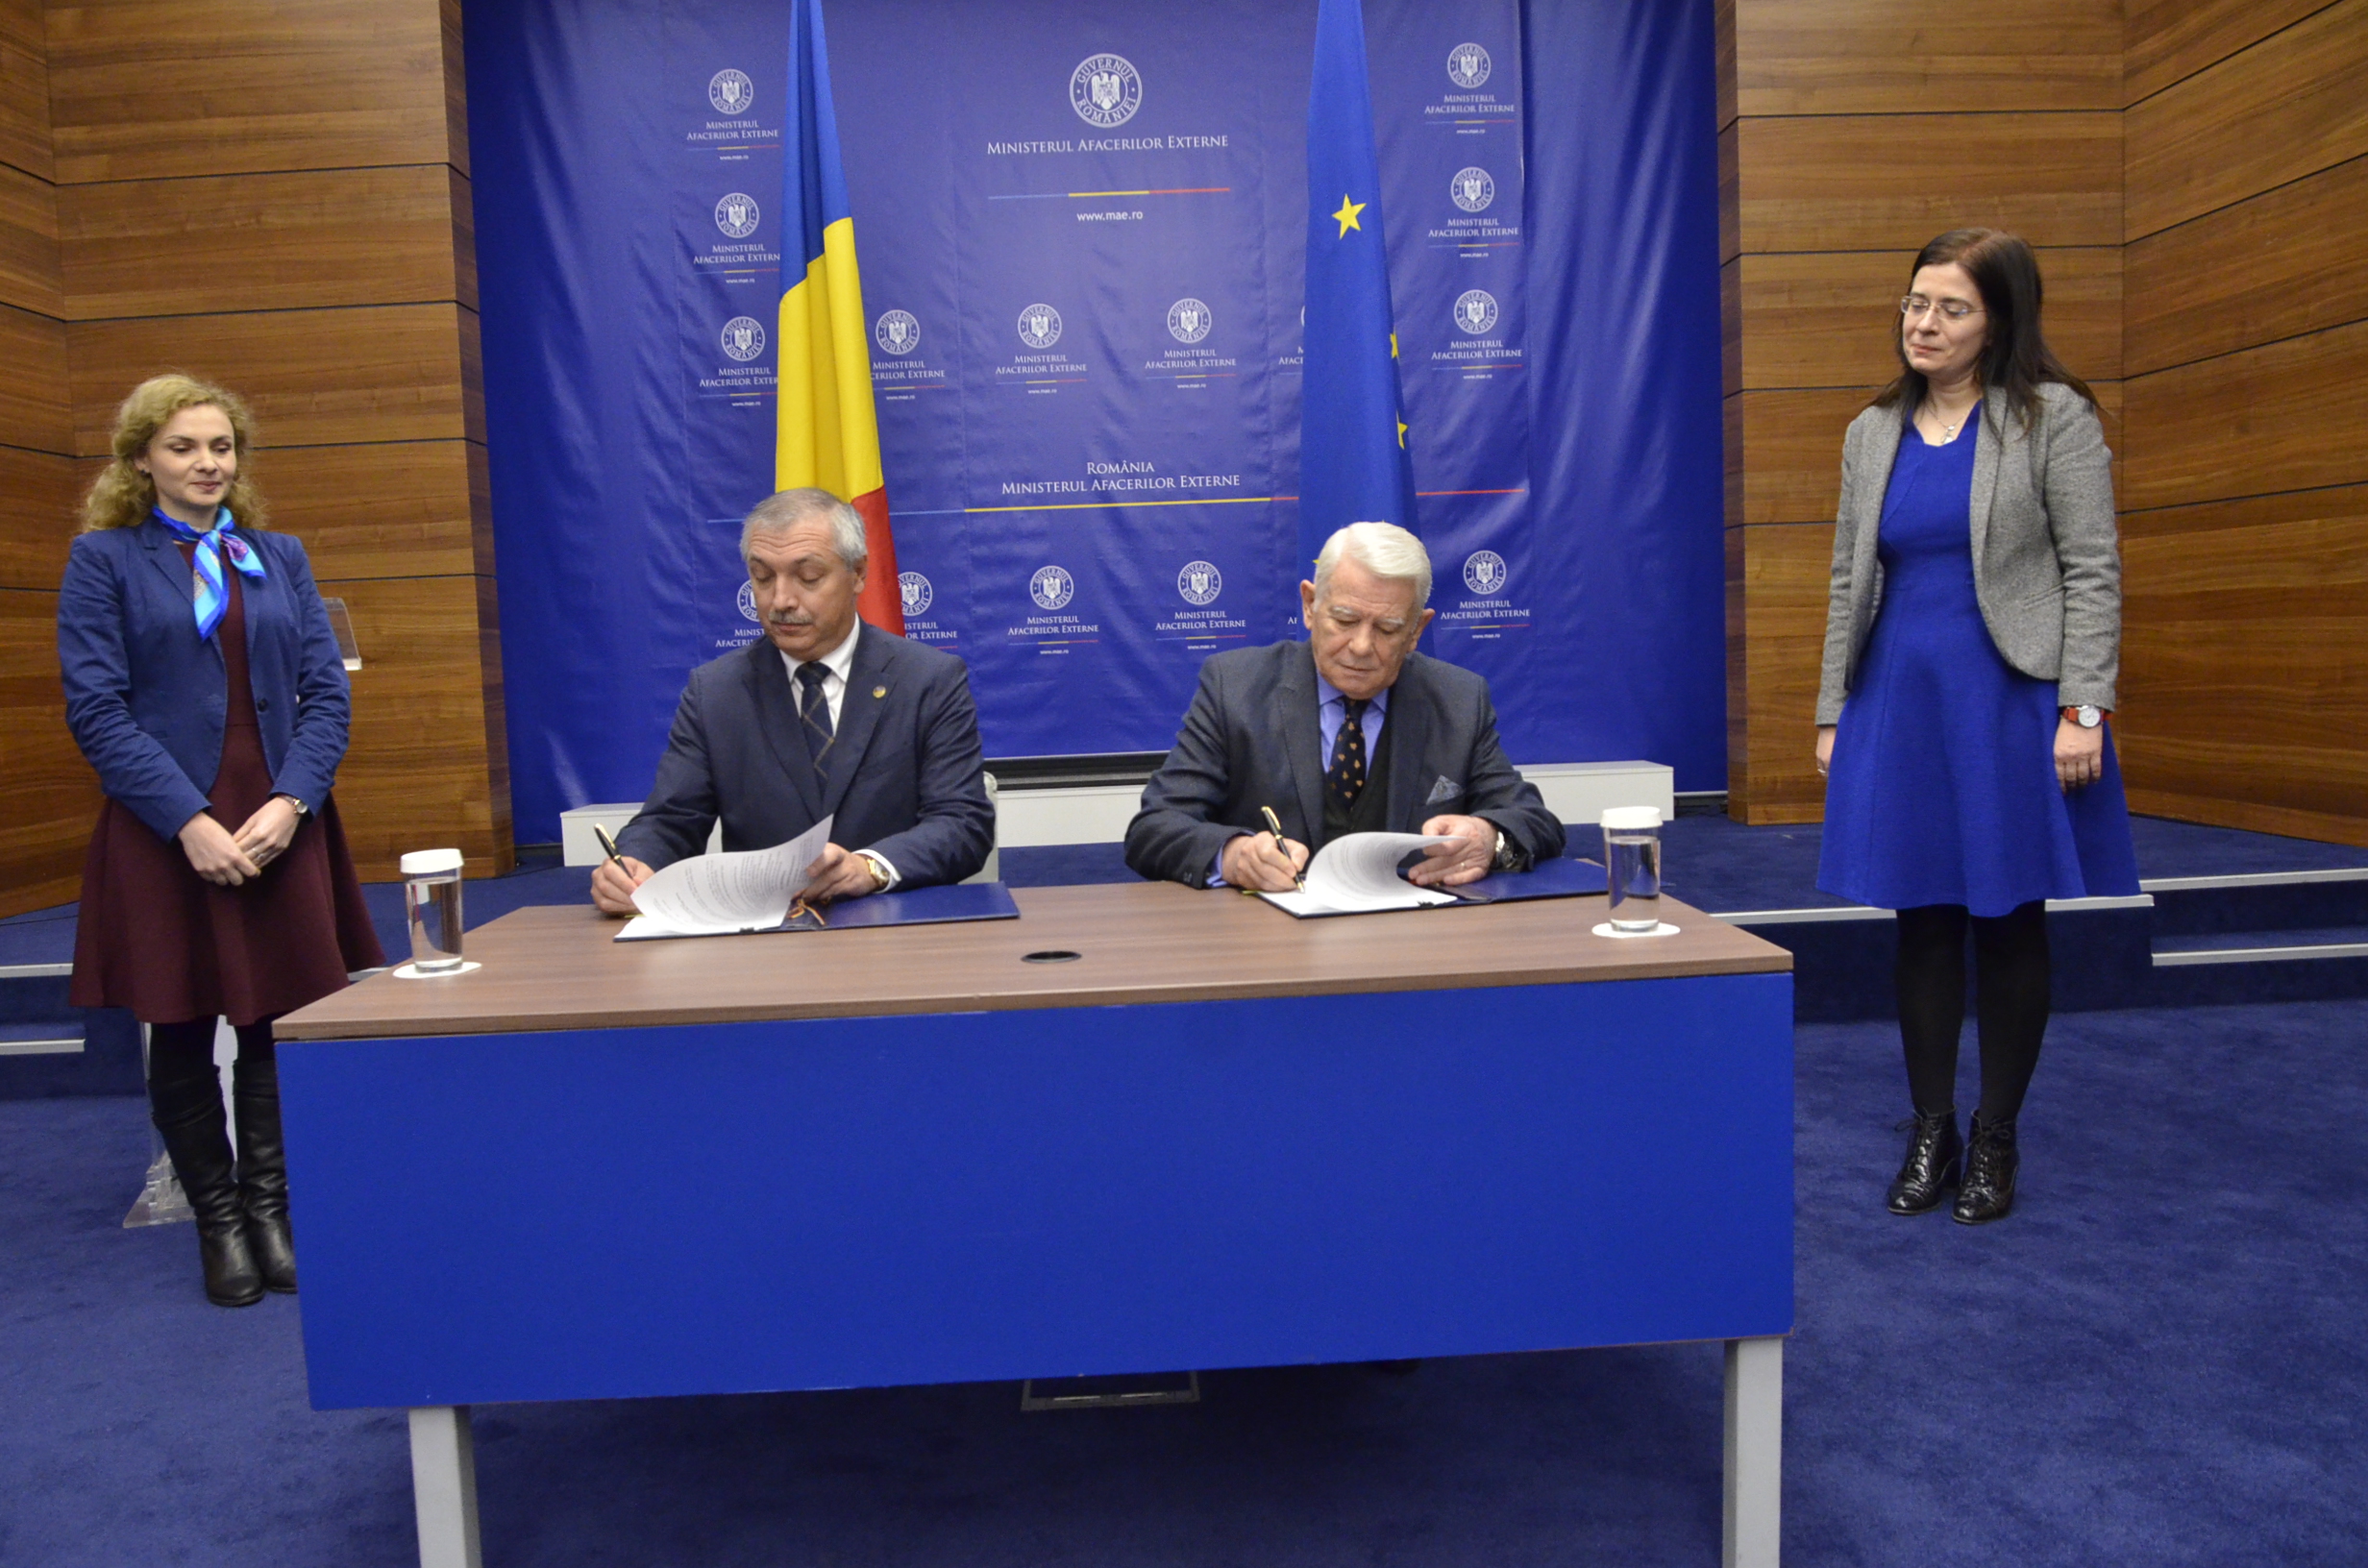 Întrevedere între conducerea UMF Tîrgu Mureș și Ministerul Afacerilor Externe